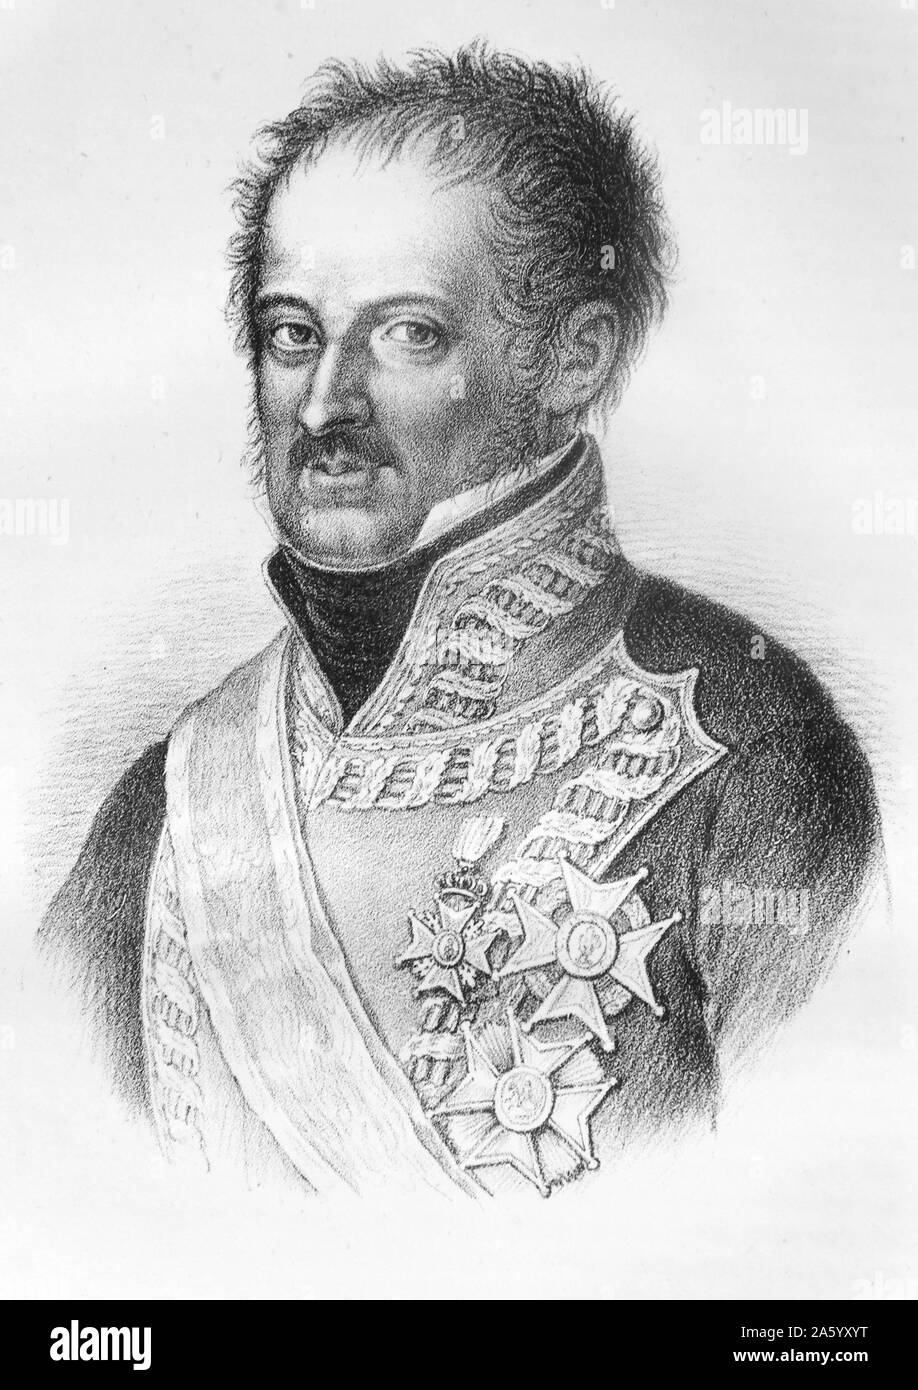 Gravure représentant le général José de Palafox y Melci (1780-1847) Duc de Saragosse était un général Aragonais qui participe à la campagne. Datée 1808 Banque D'Images